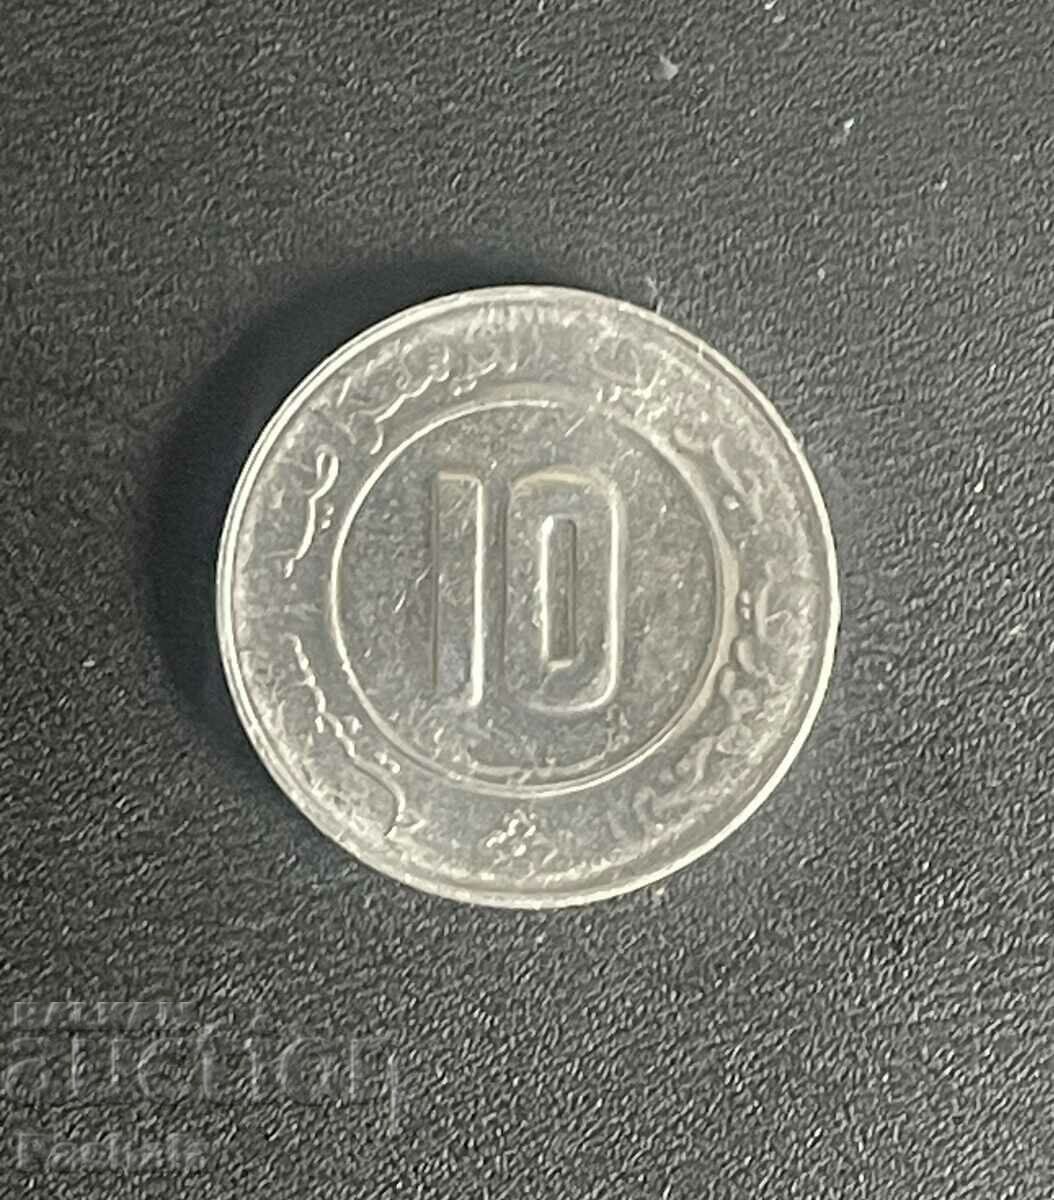 Algeria 10 centimes 1989